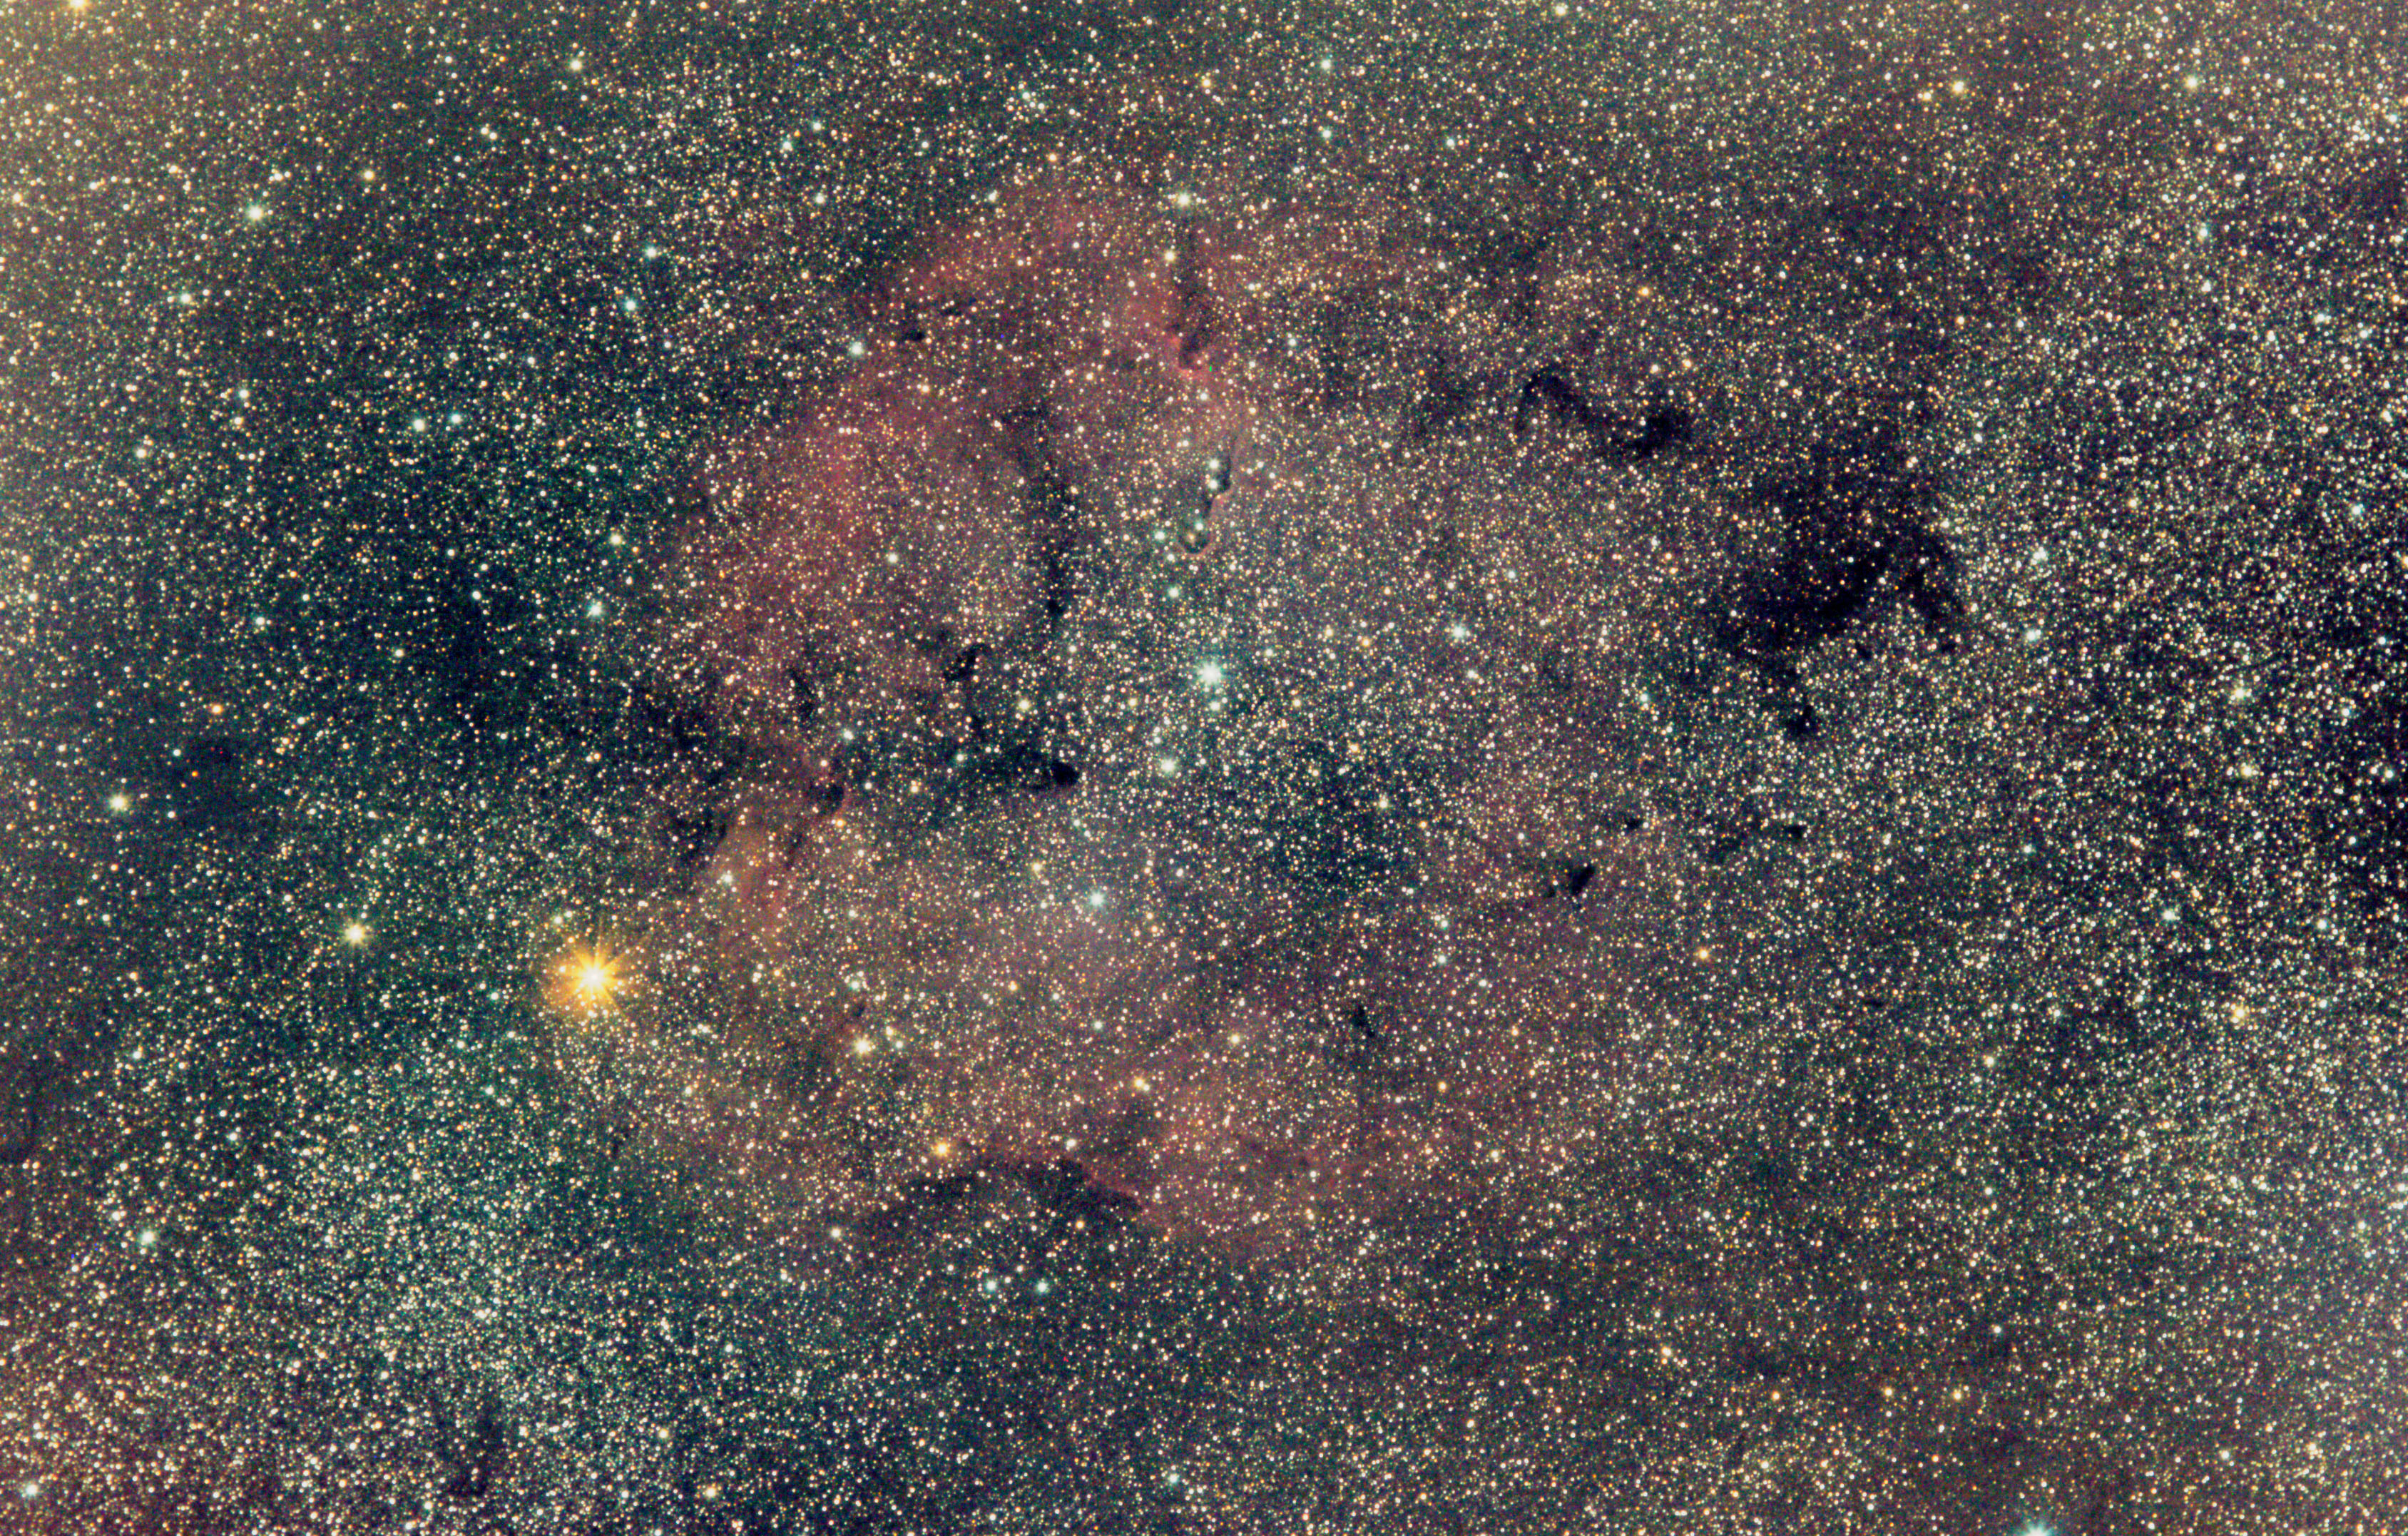 IC 1396 